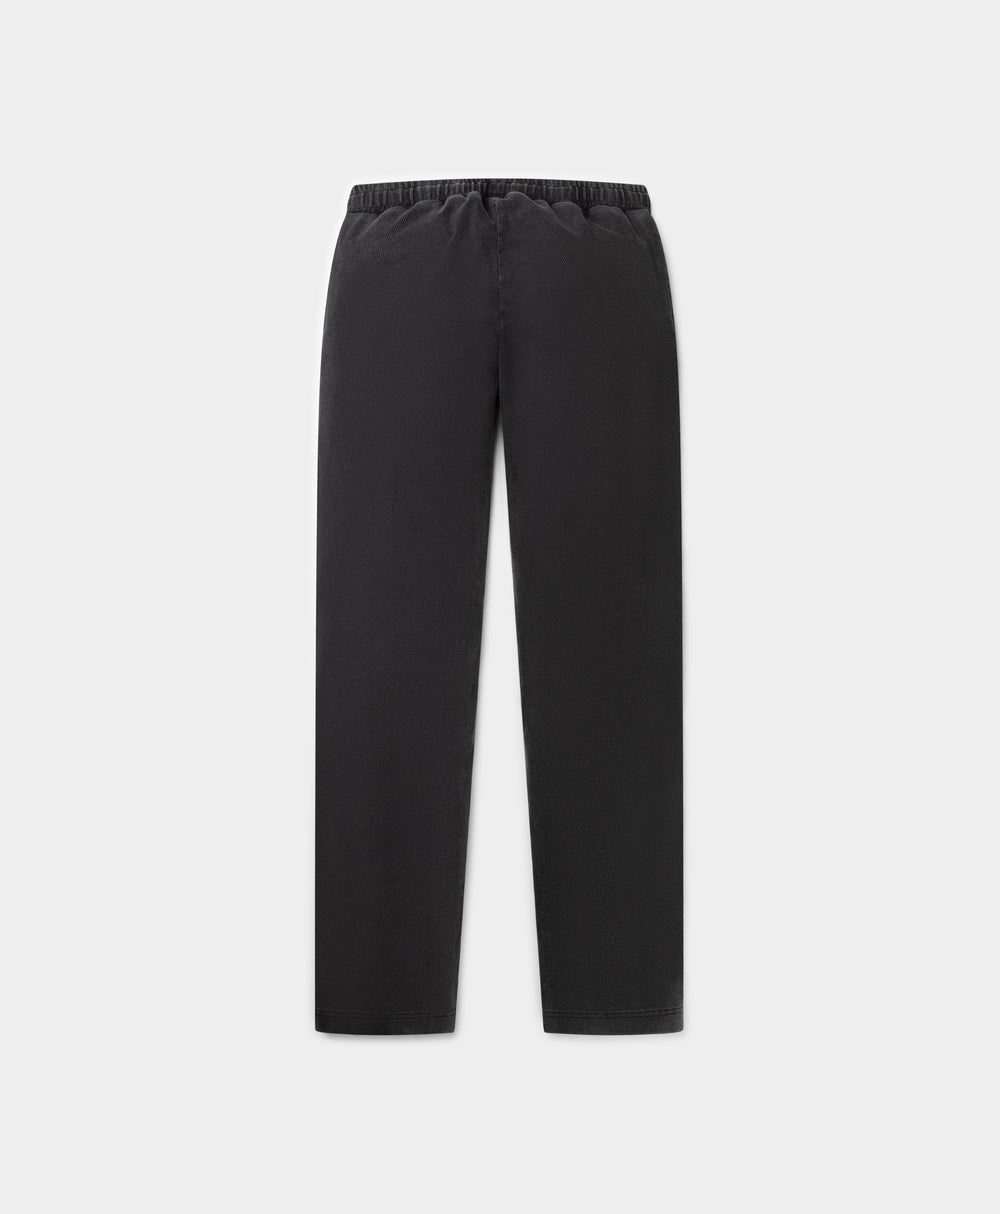 DP - Black Rodell Wash Pants - Packshot - Rear